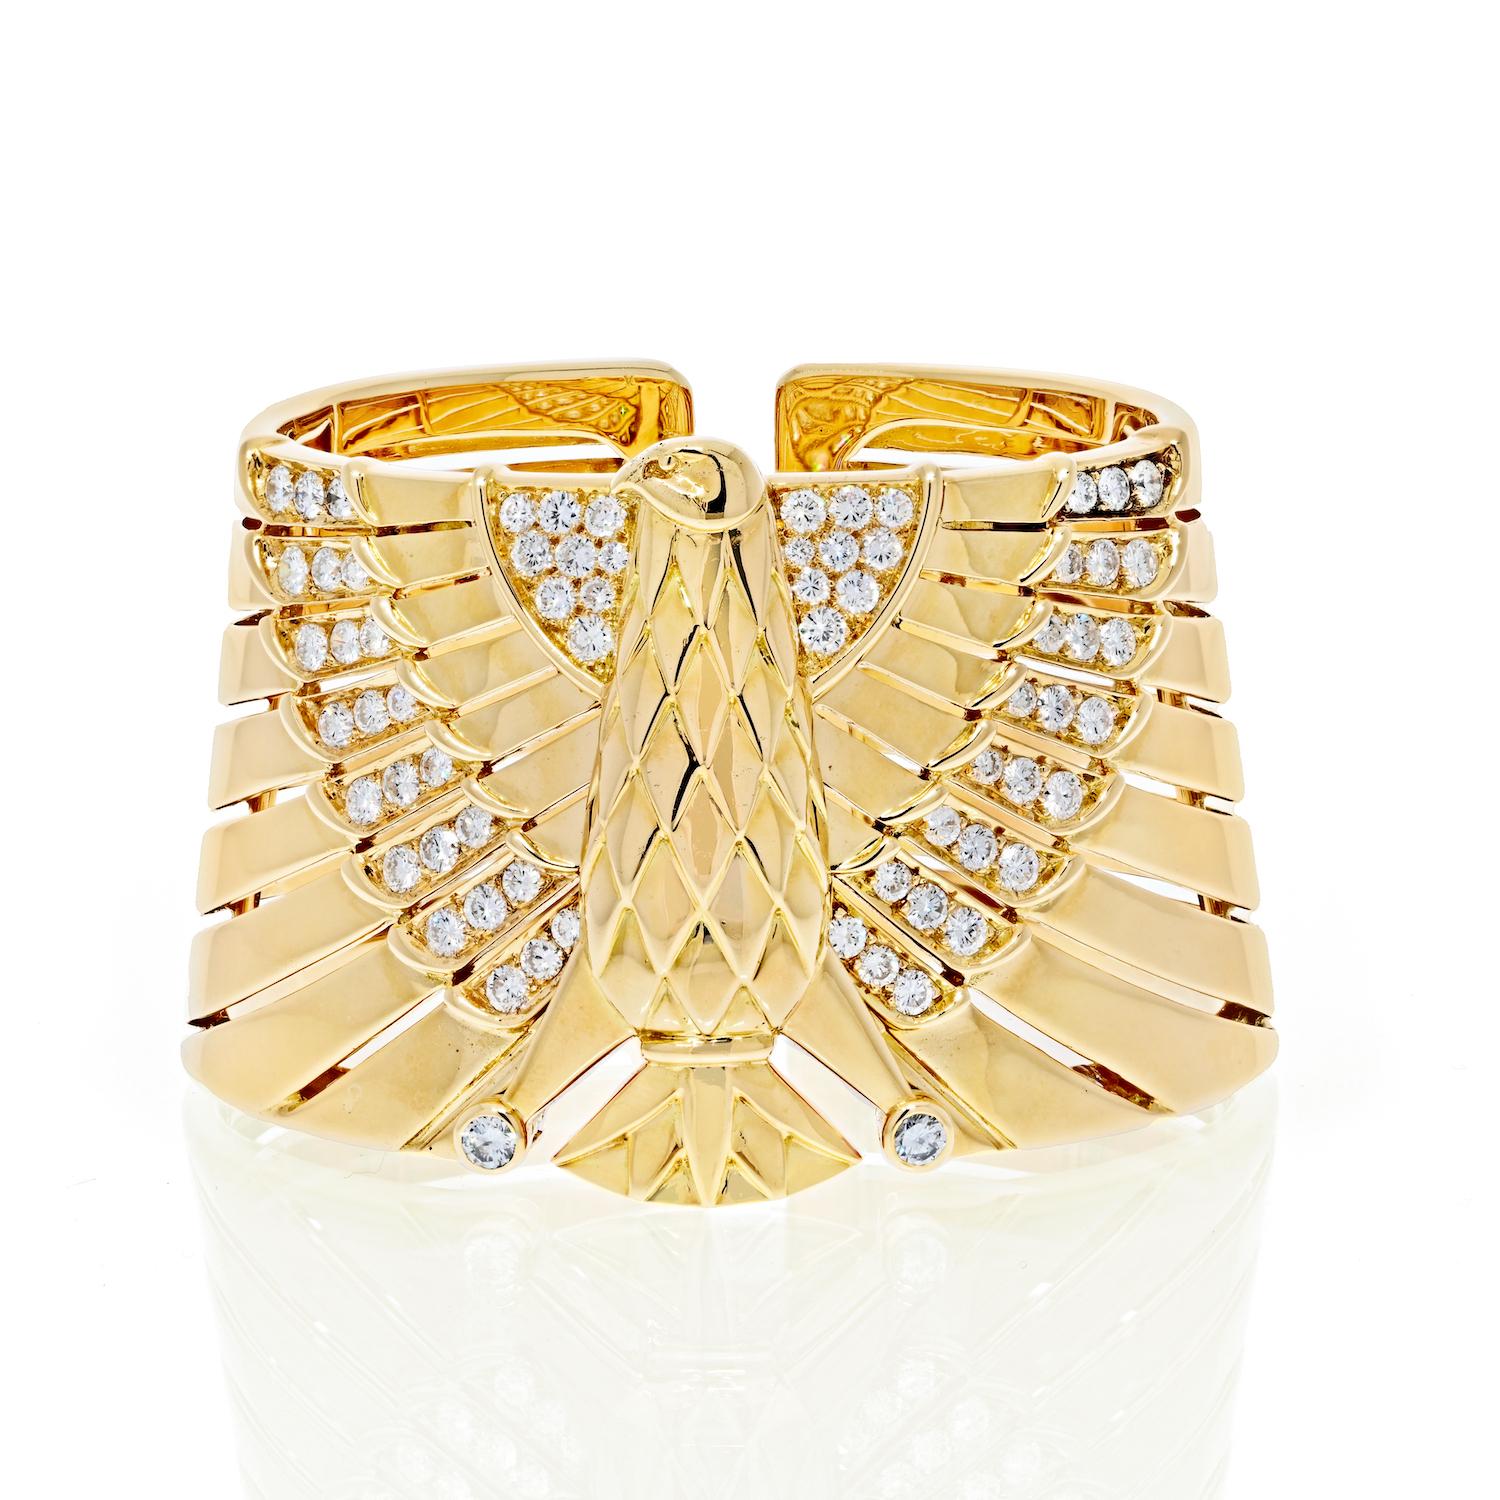 Absolument stupéfiant, si spécial et unique, ce bracelet égyptien Revival Horus Falcon Diamond de Cartier est tout ! 

Réalisé en or jaune 18k avec des diamants taille ronde d'environ 4,30 carats, couleur F/G, pureté VS. Le poids total du bracelet